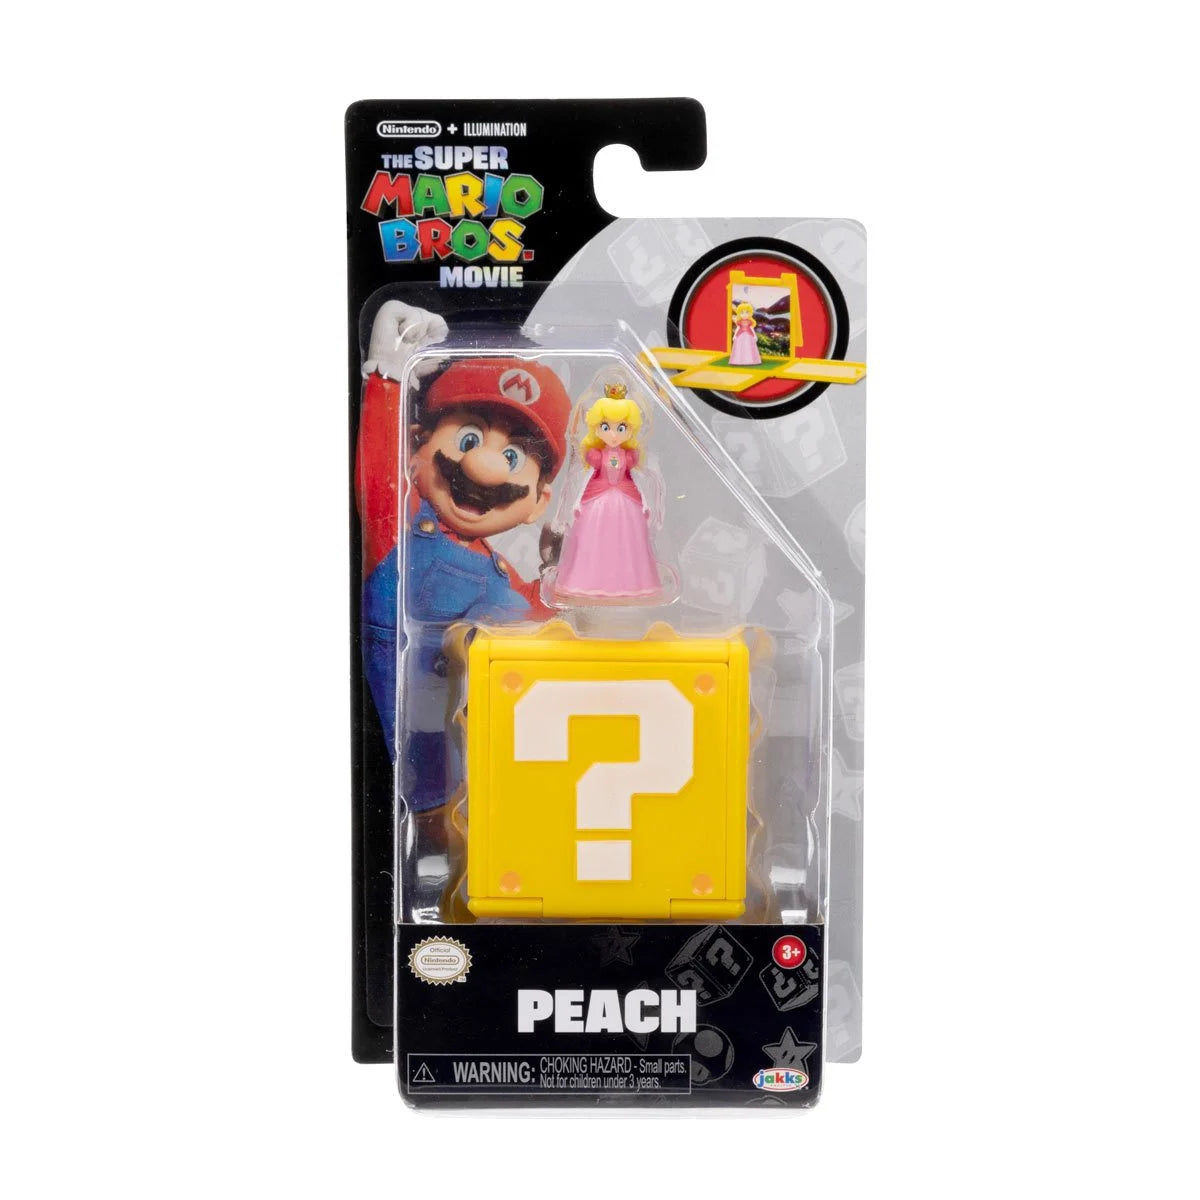 The Super Mario Bros. Movie Mini-Figures- PEACH